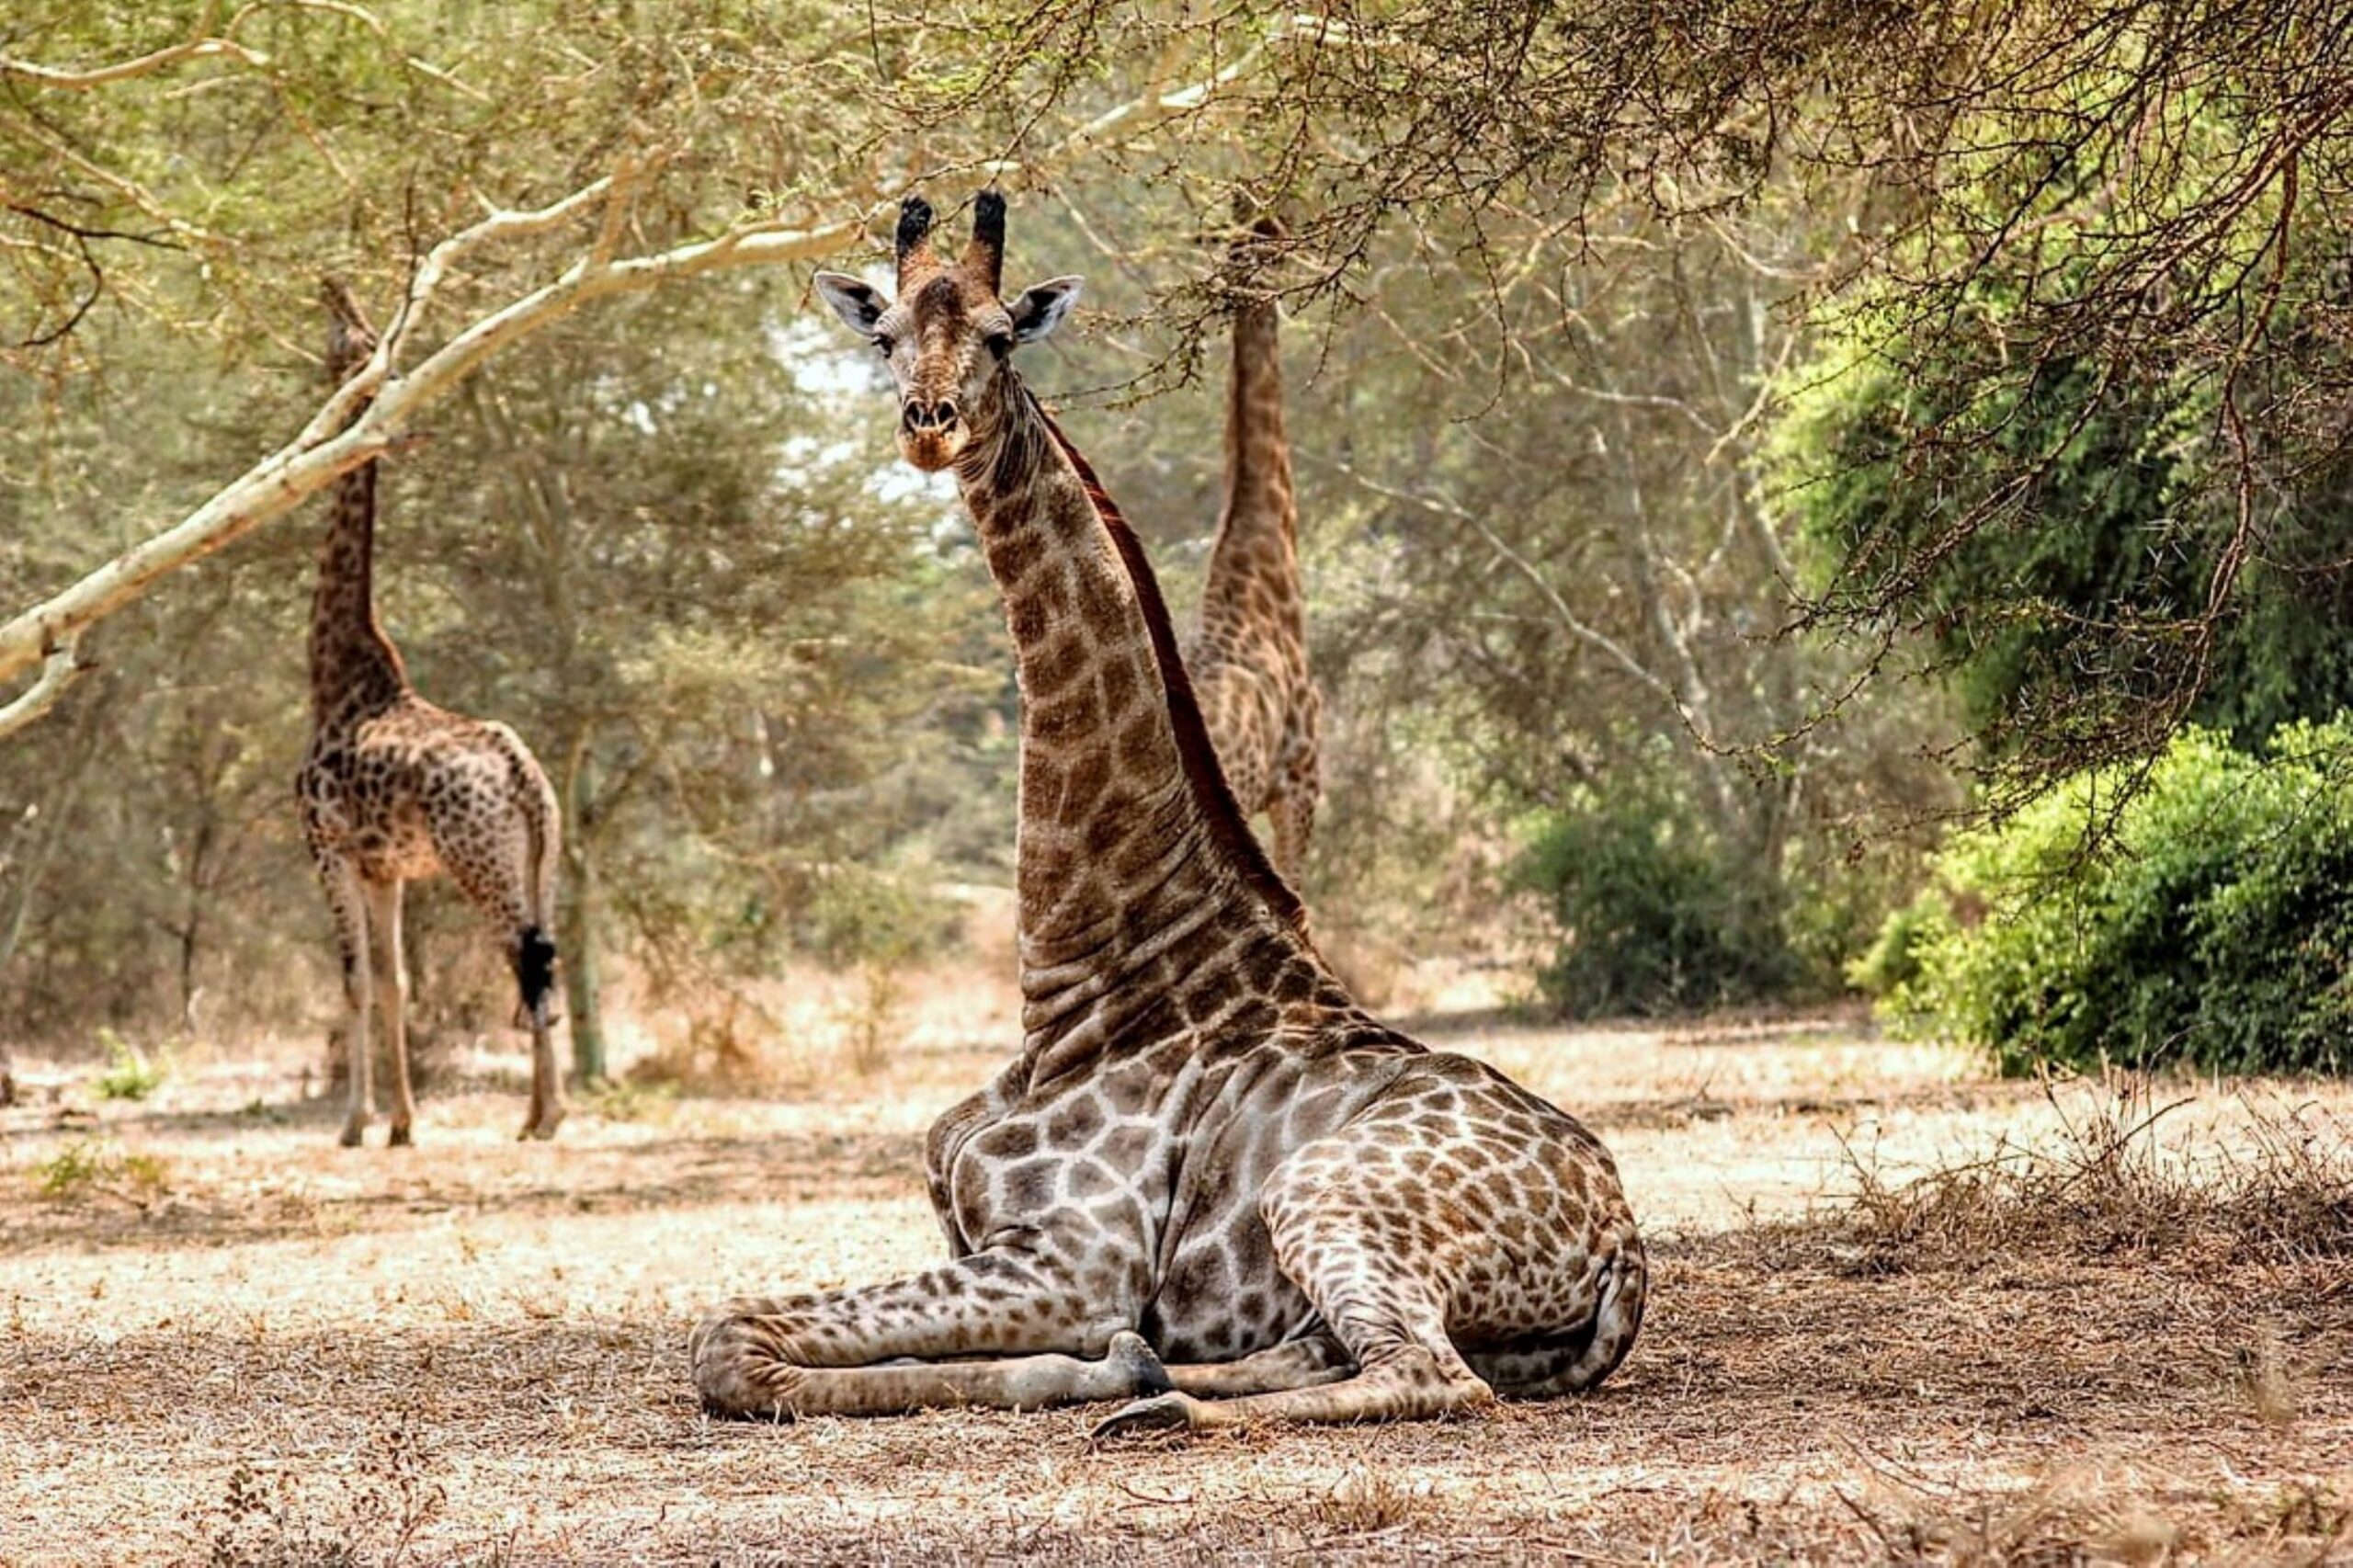 Giraffe in Malawi by Craig Manners